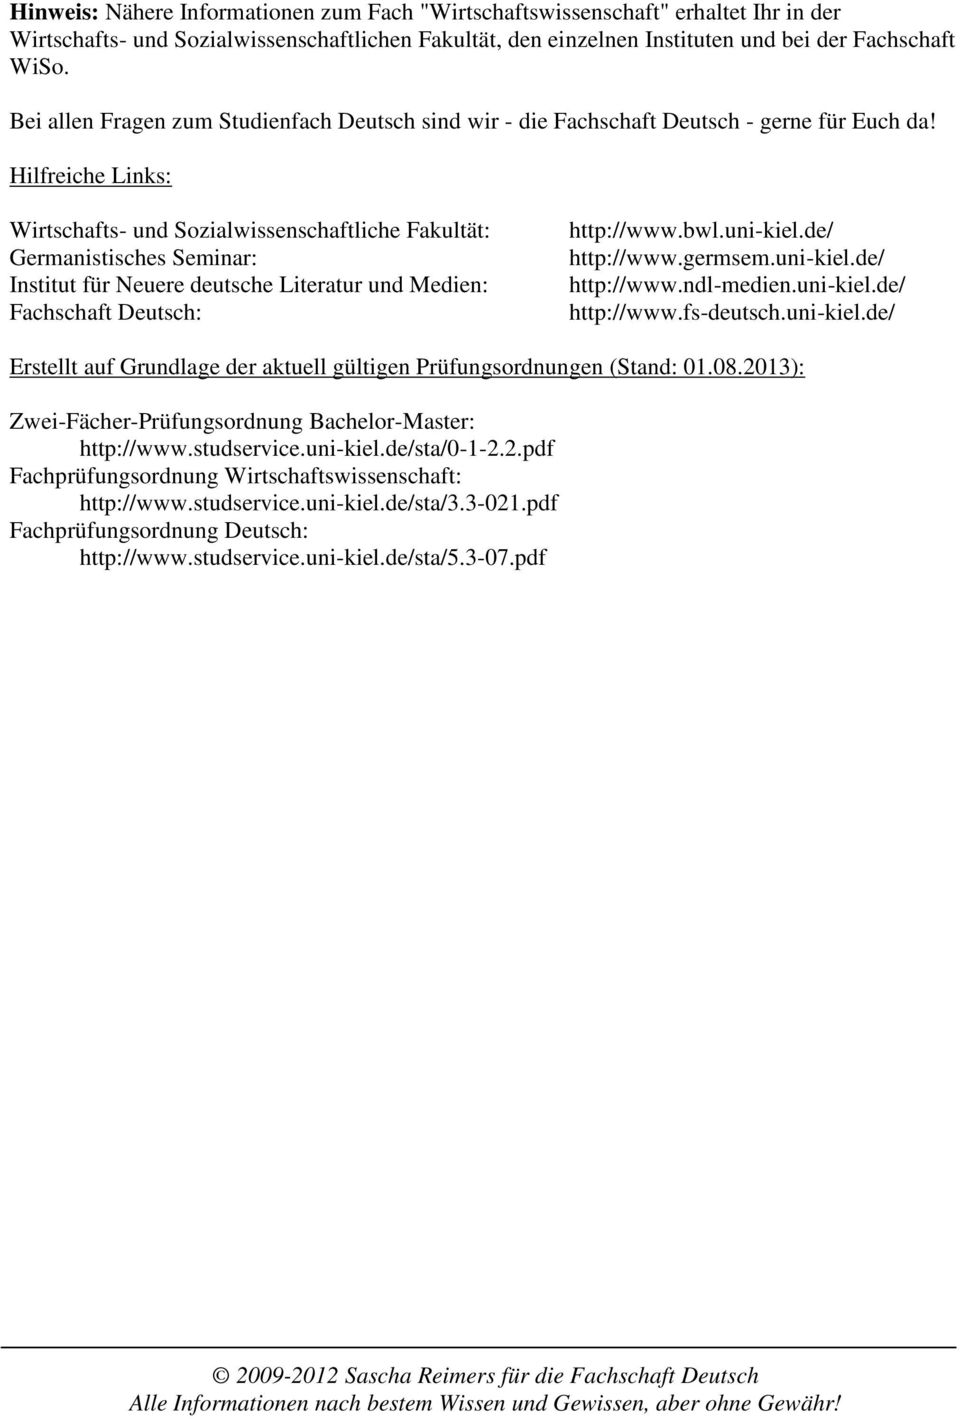 Hilfreiche Links: Wirtschafts- und Sozialwissenschaftliche Fakultät: Germanistisches Seminar: Institut für Neuere deutsche Literatur und Medien: Fachschaft Deutsch: http://www.bwl.uni-kiel.